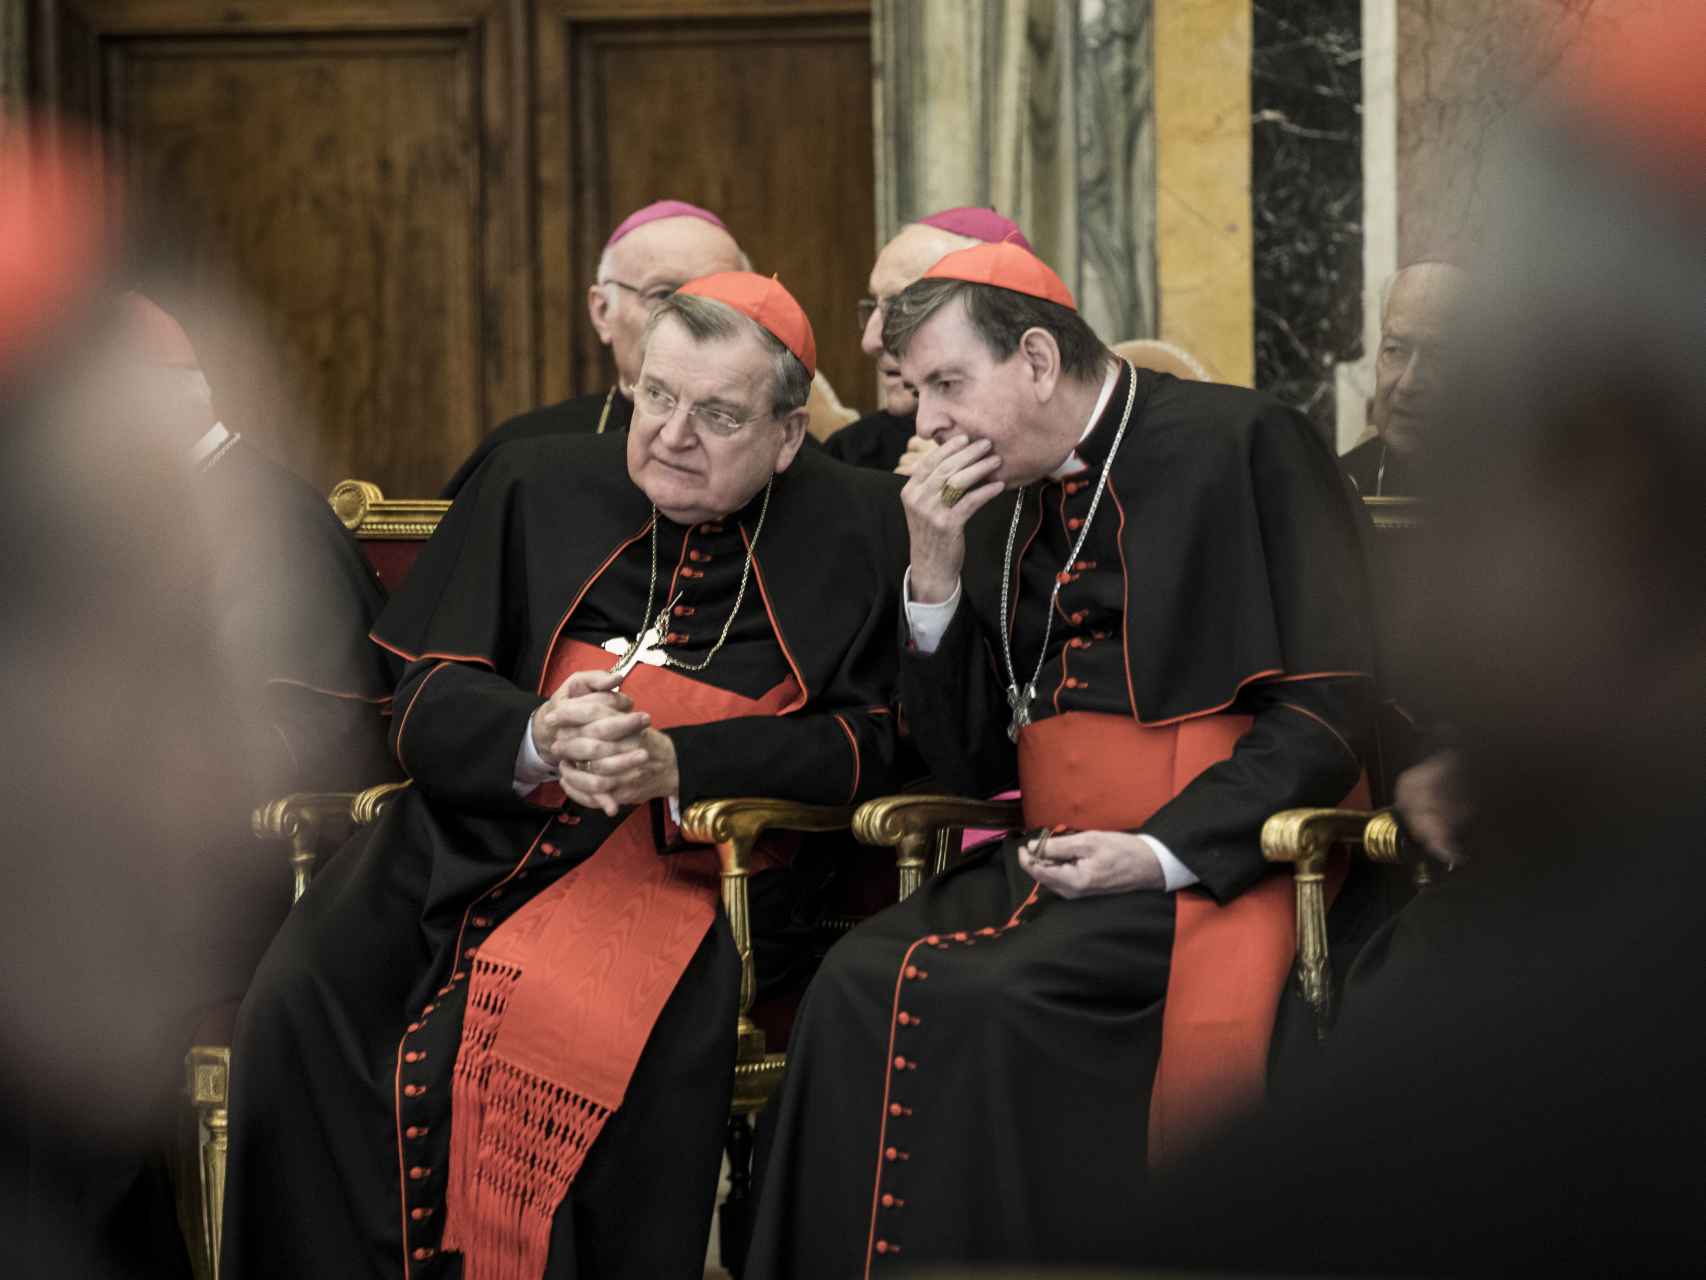 Burke charla con otro cardenal durante los saludos navideños de la curia romana el 22 de diciembre de 2016 en el Vaticano.